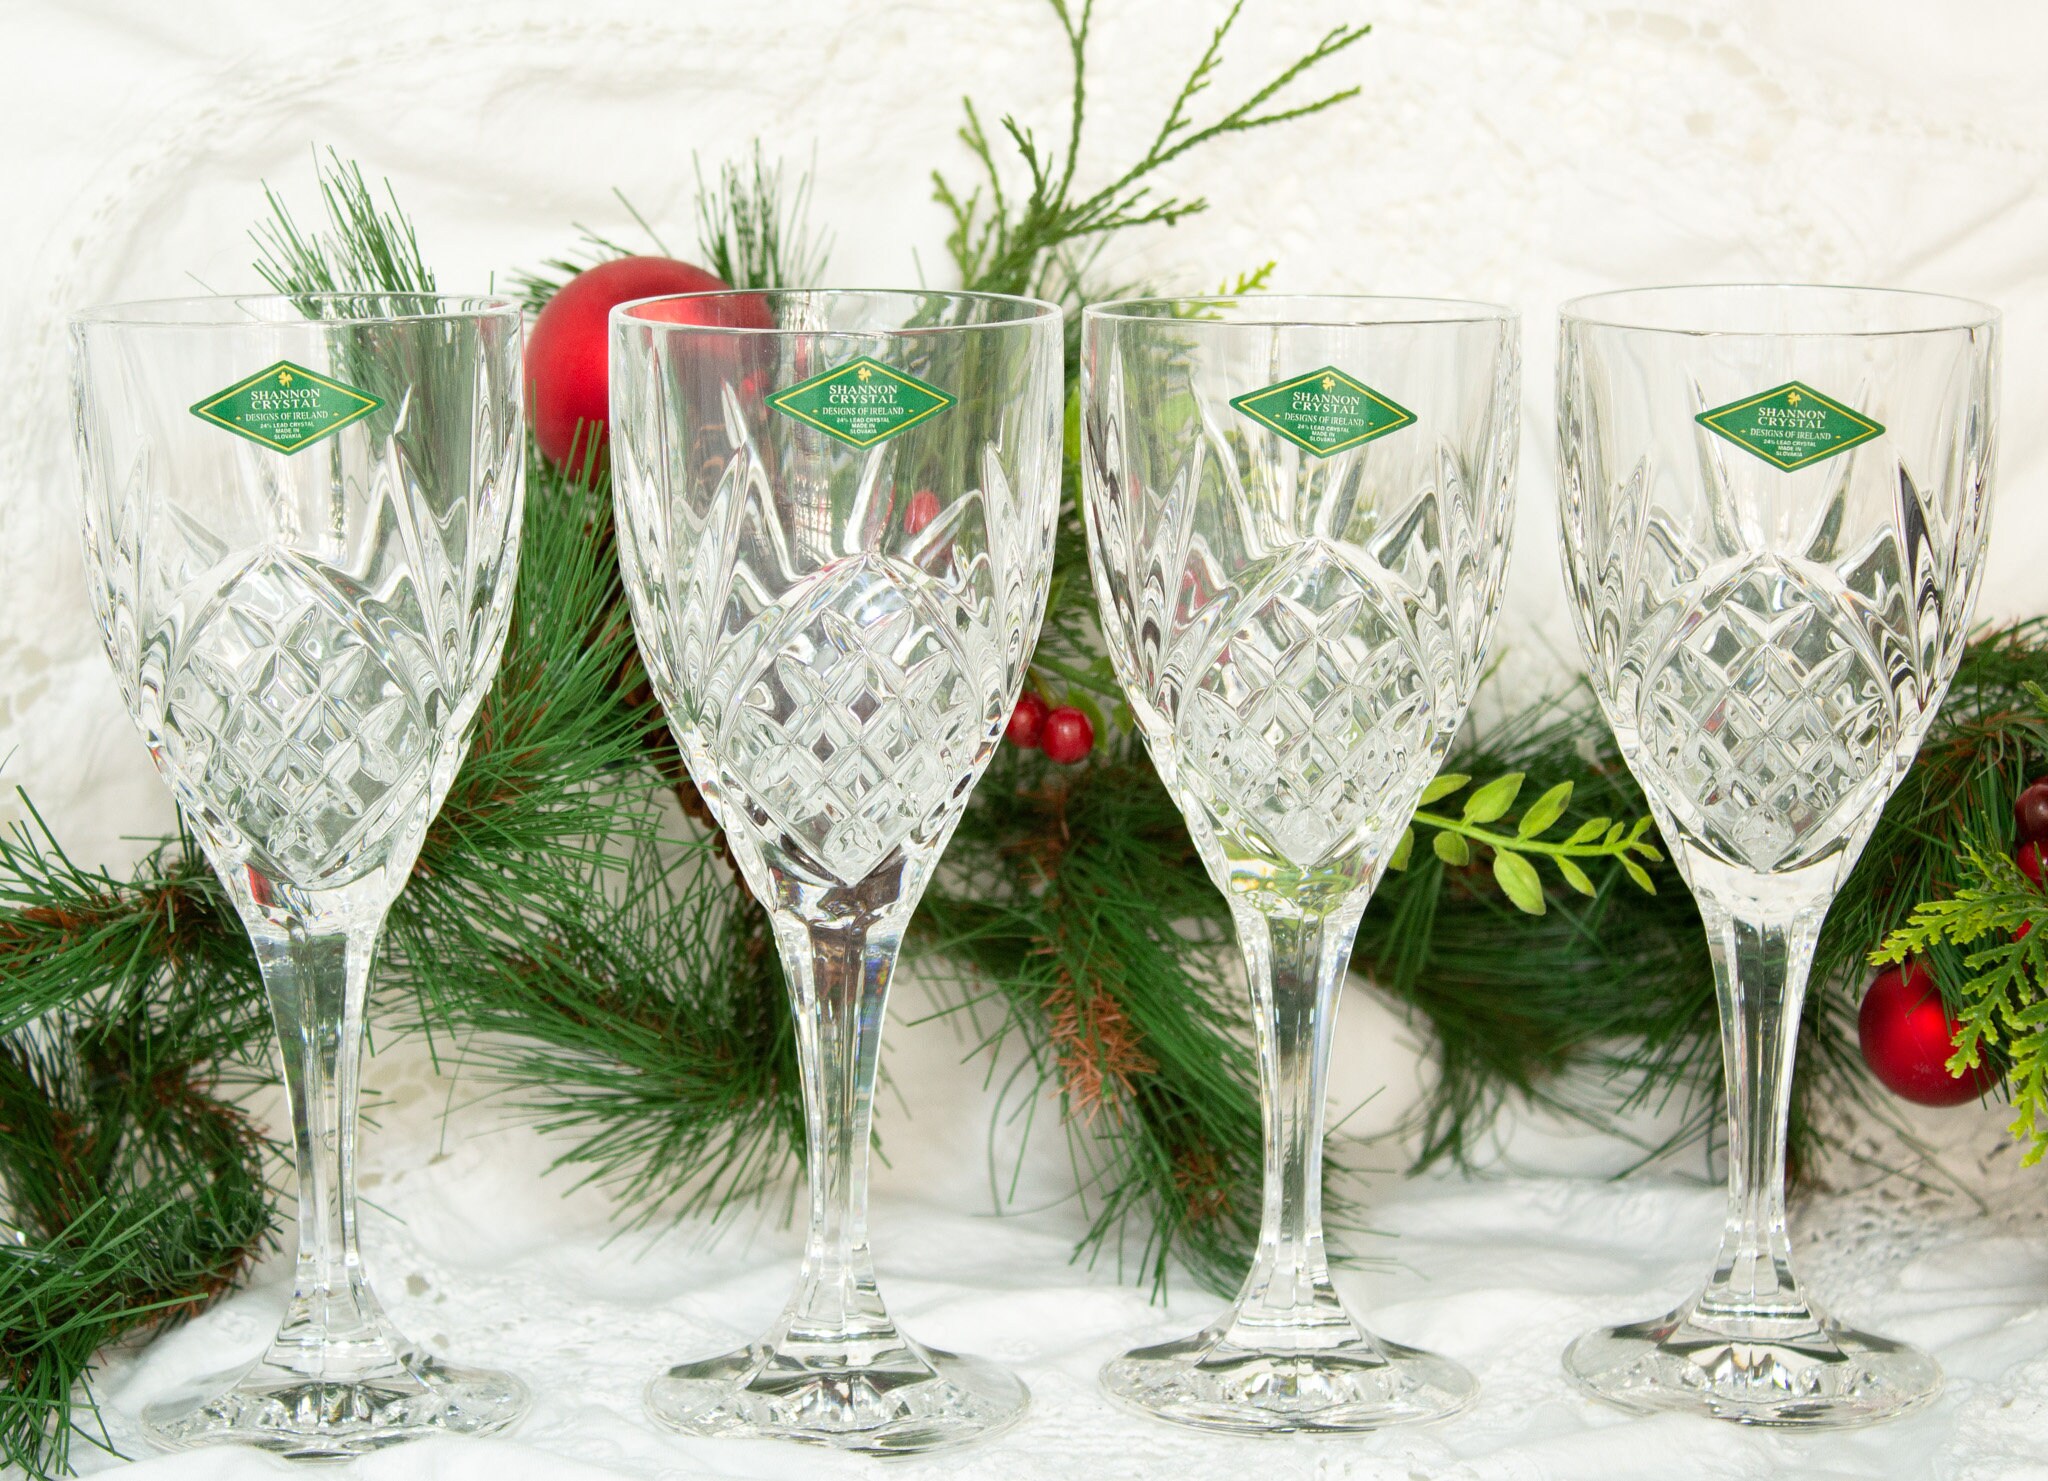 Set of 4 Shannon 24% Lead Crystal Wine Glasses / Slovakia / 7 3/4 Tall